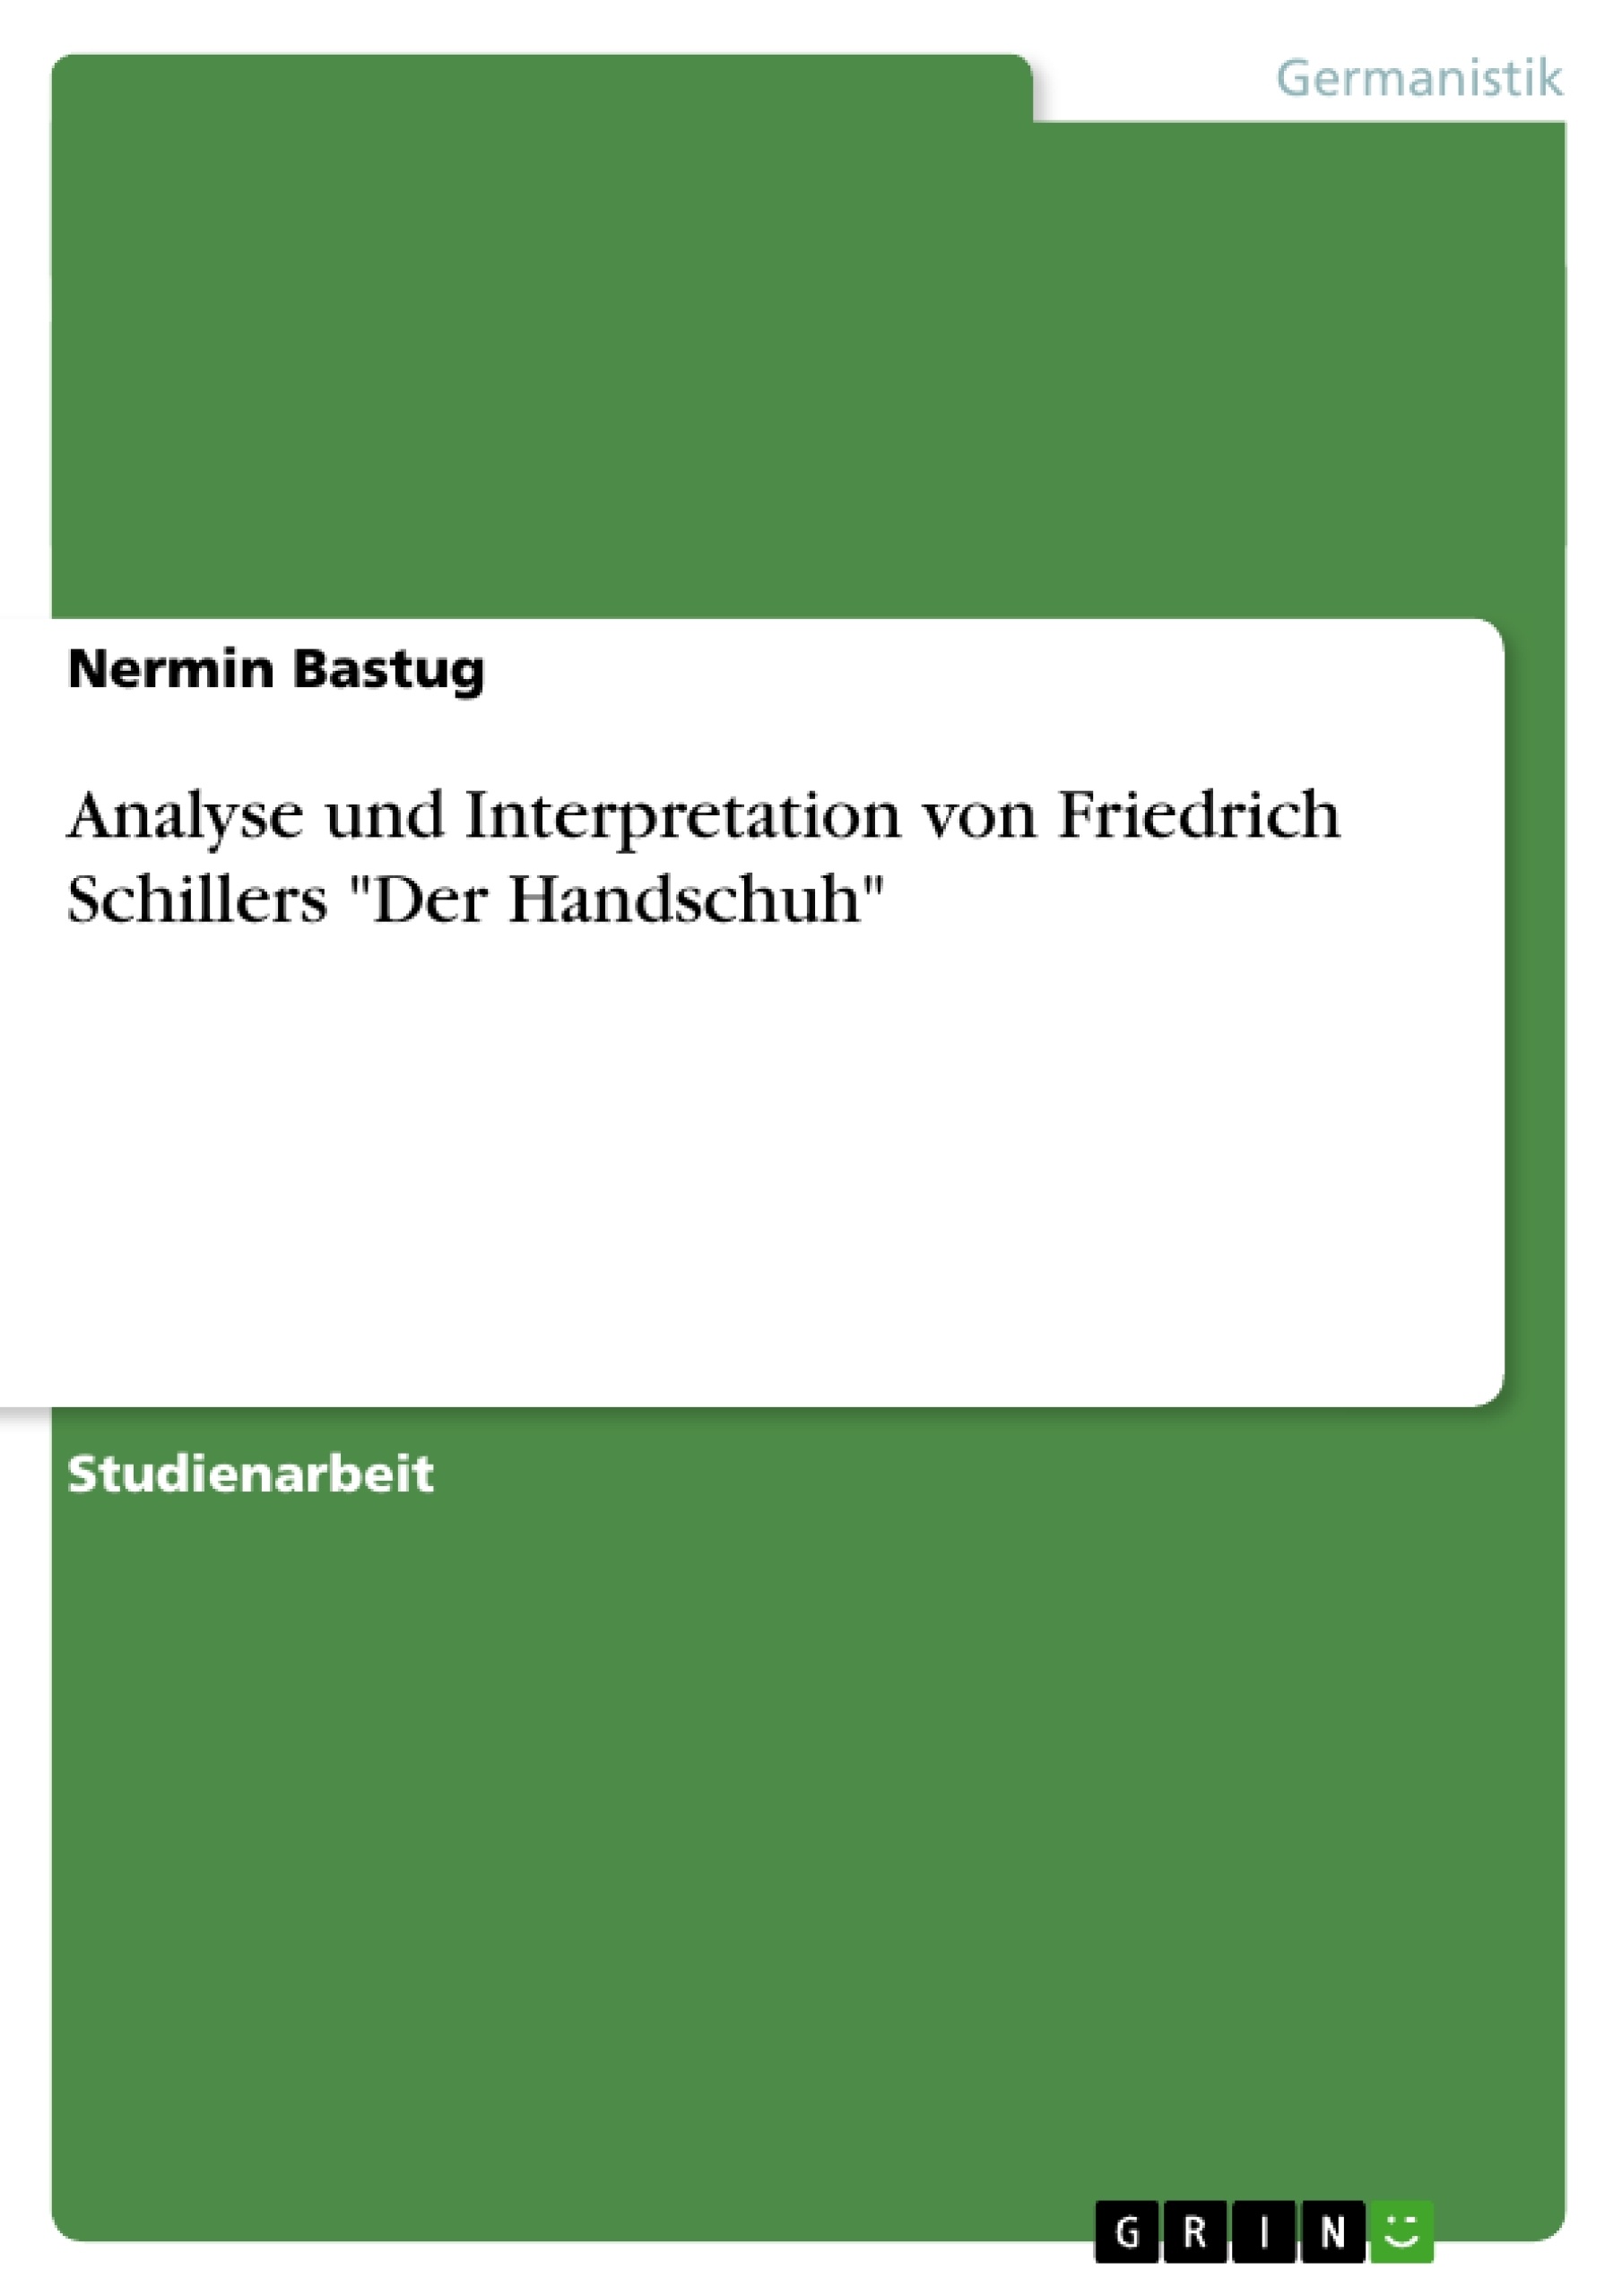 Title: Analyse und Interpretation von Friedrich Schillers "Der Handschuh"